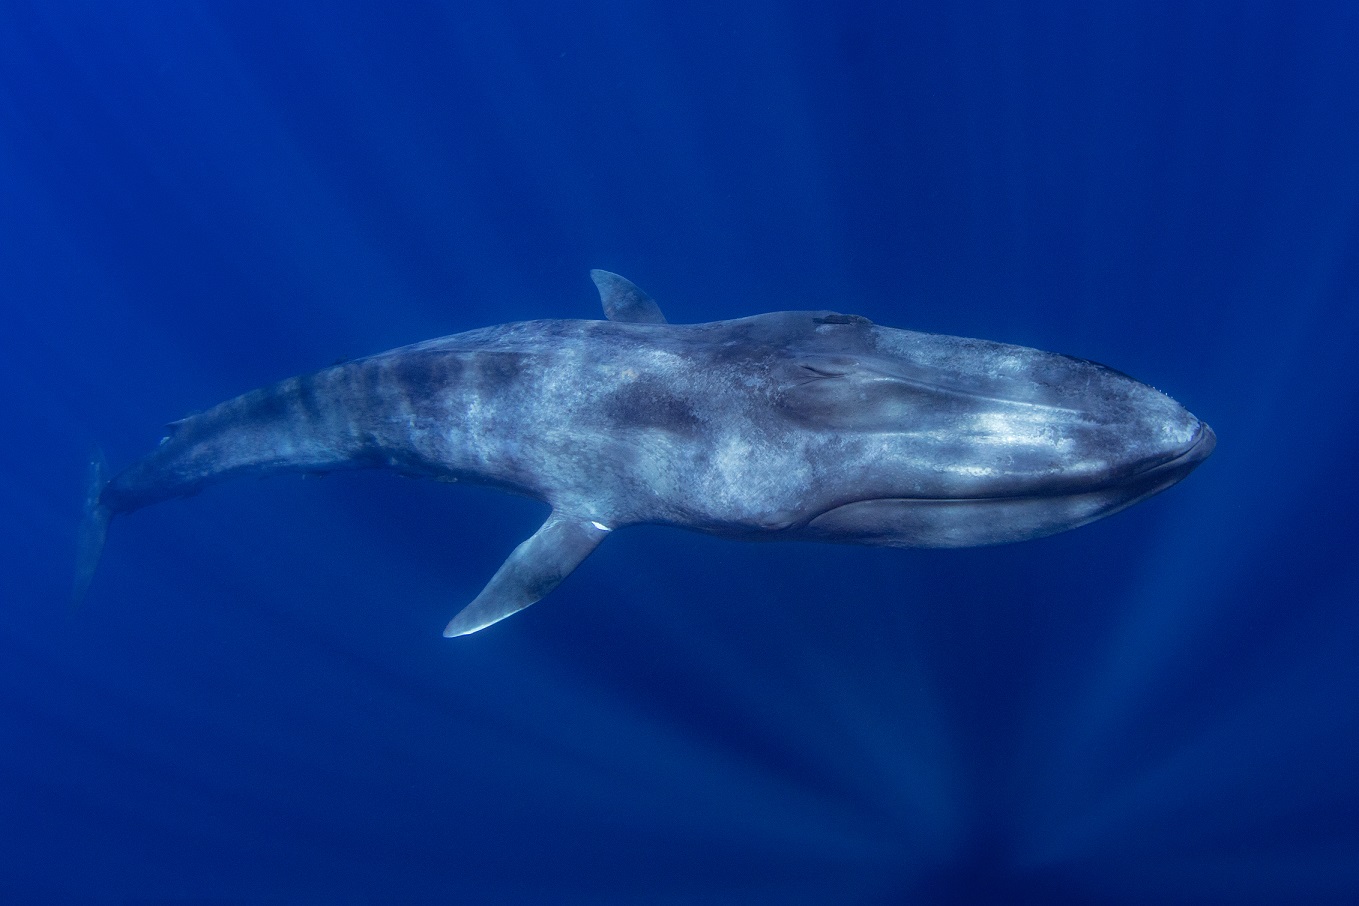 blue whale size comparison to megalodon